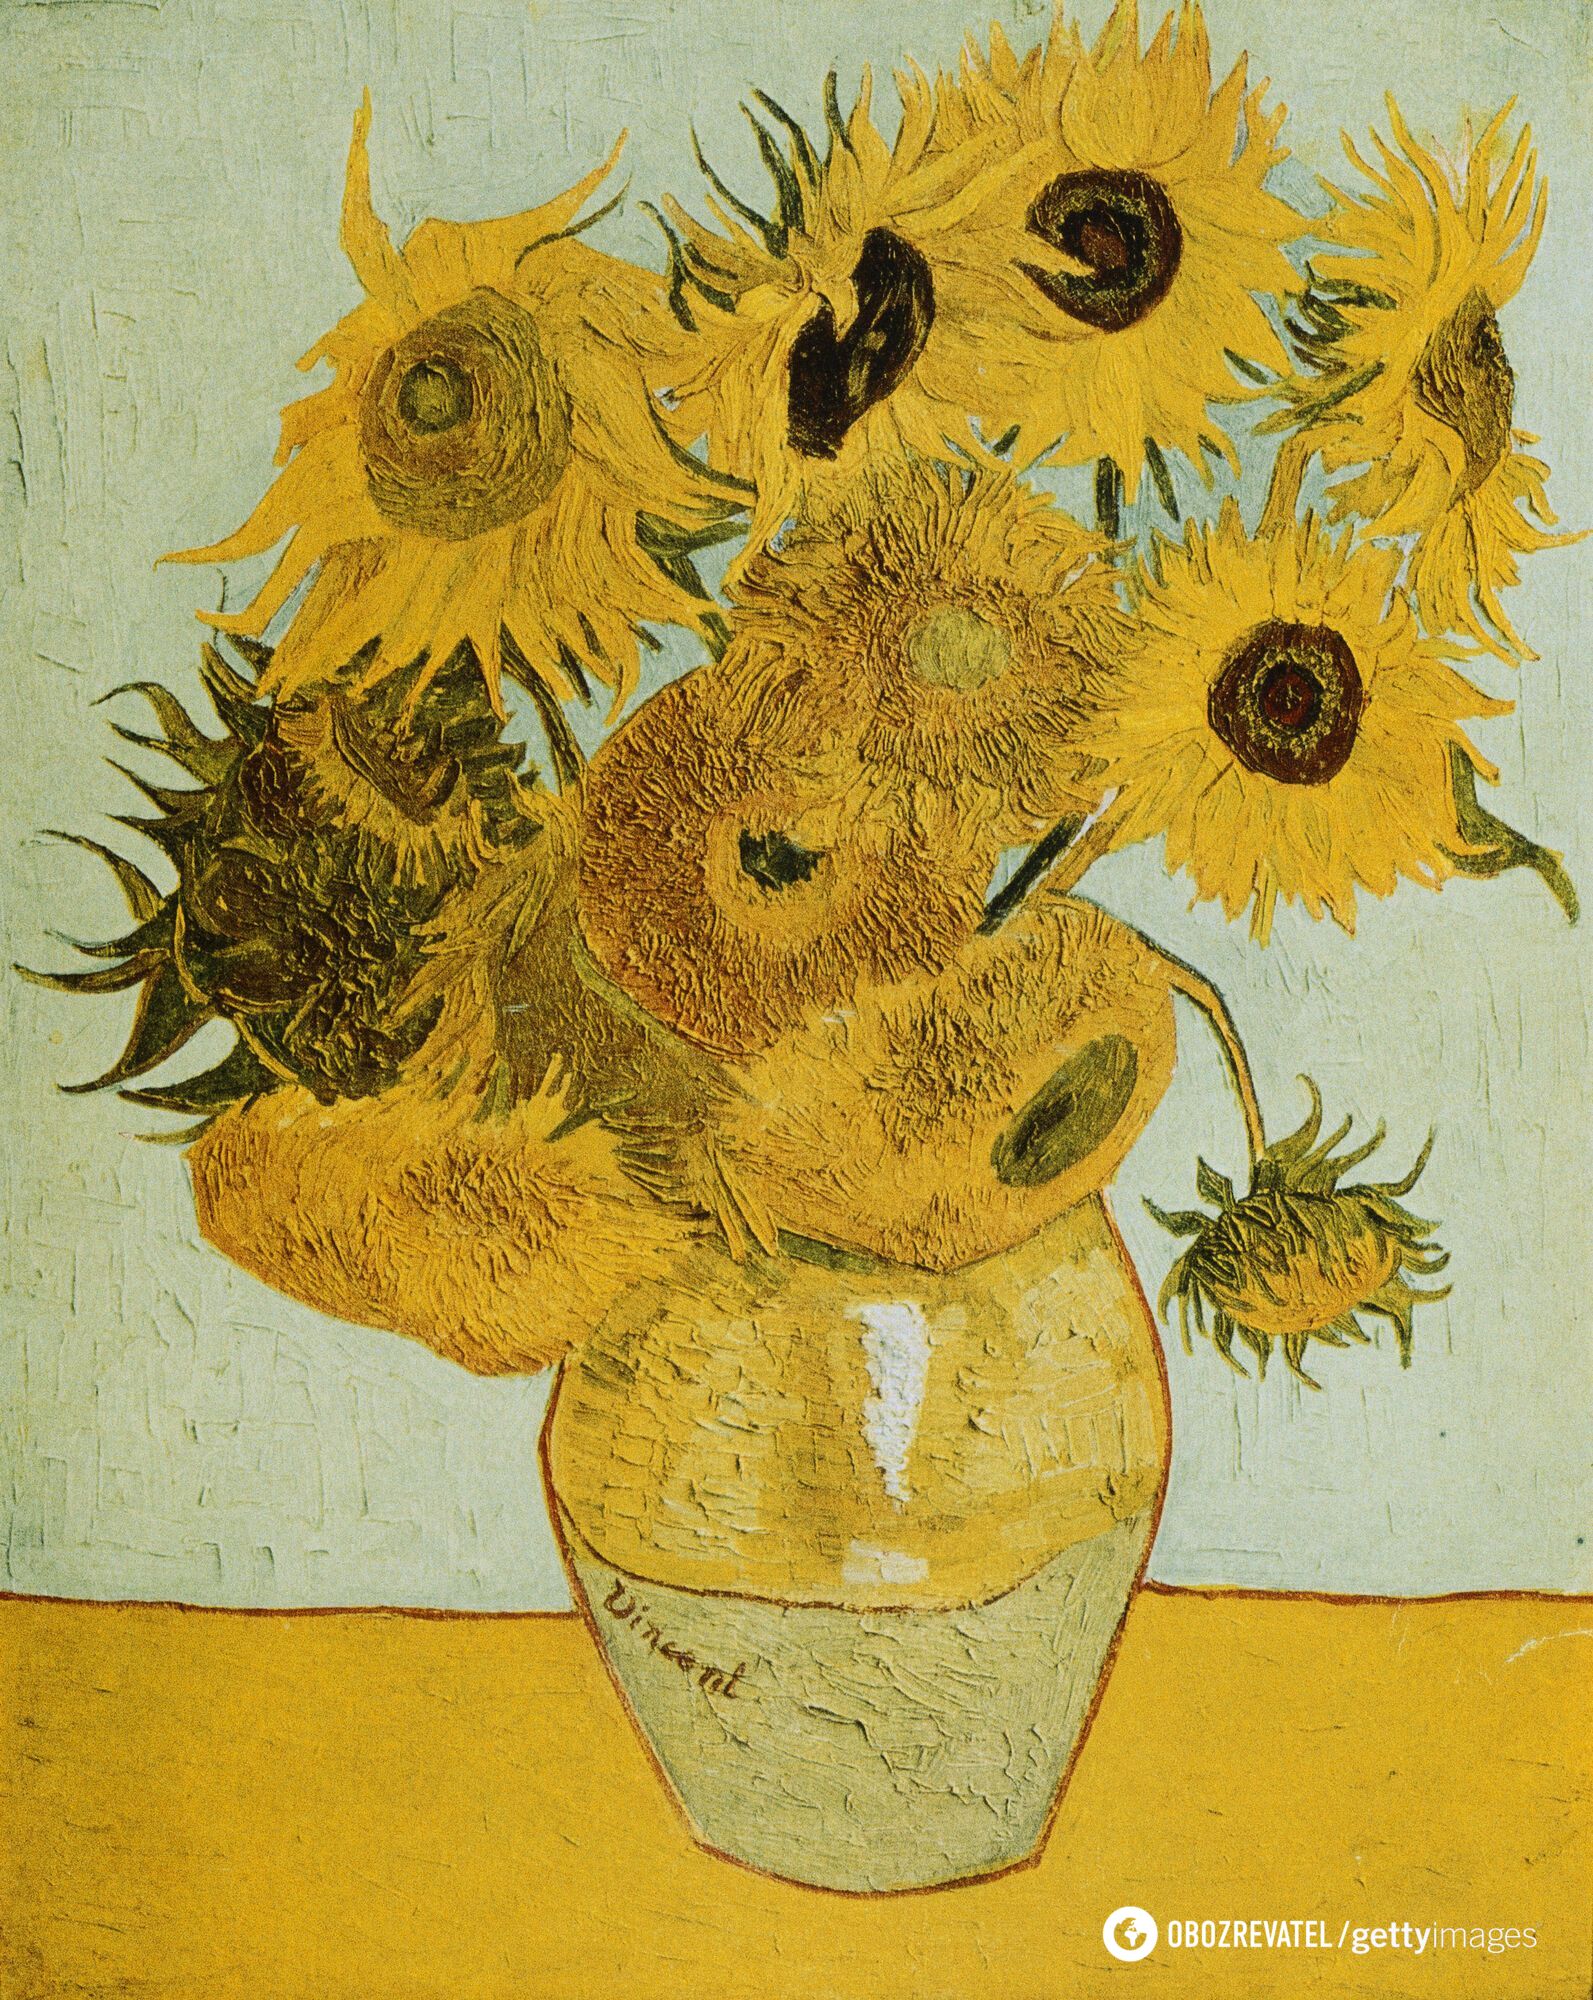 Nie odciął sobie całego ucha i miał romans z ciężarną prostytutką: 7 interesujących faktów na temat legendarnego malarza Vincenta van Gogha